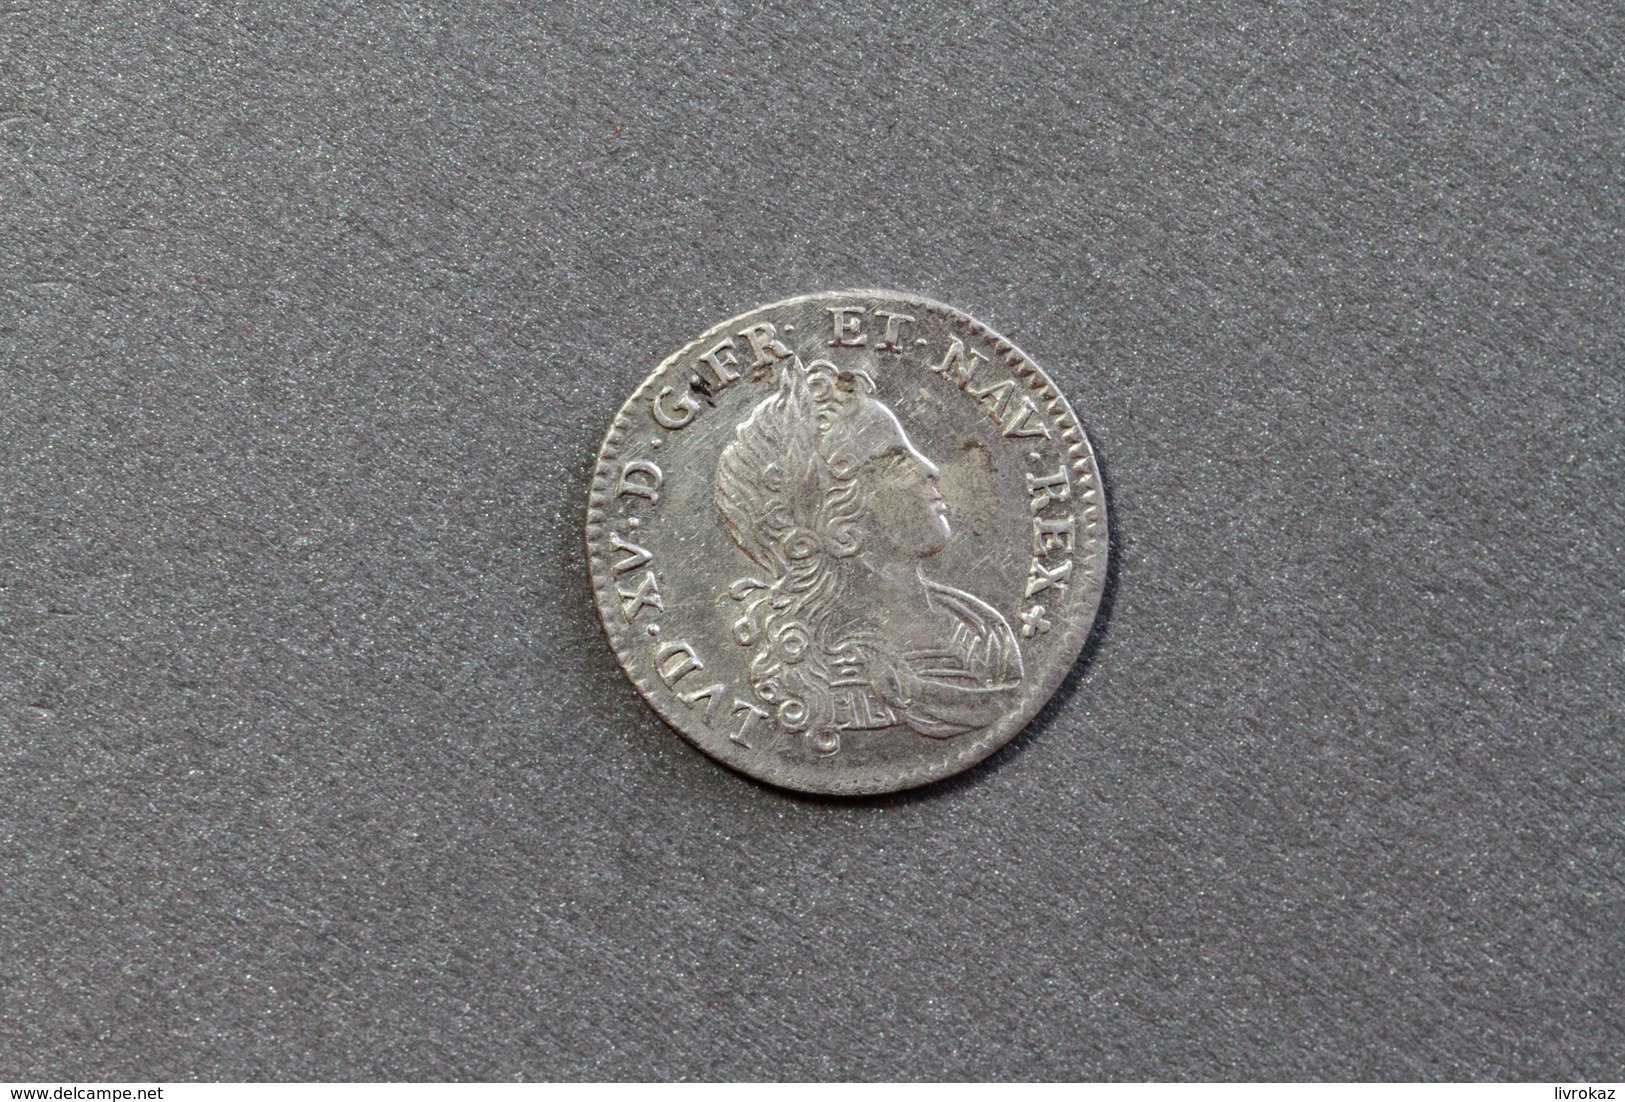 Monnaie En Argent, France Louis XV, 20 Sols, 1/6ème Ecu Dit De France, Navarre Et Béarn, 1719, Lettre A : Paris - 1715-1774 Louis XV Le Bien-Aimé